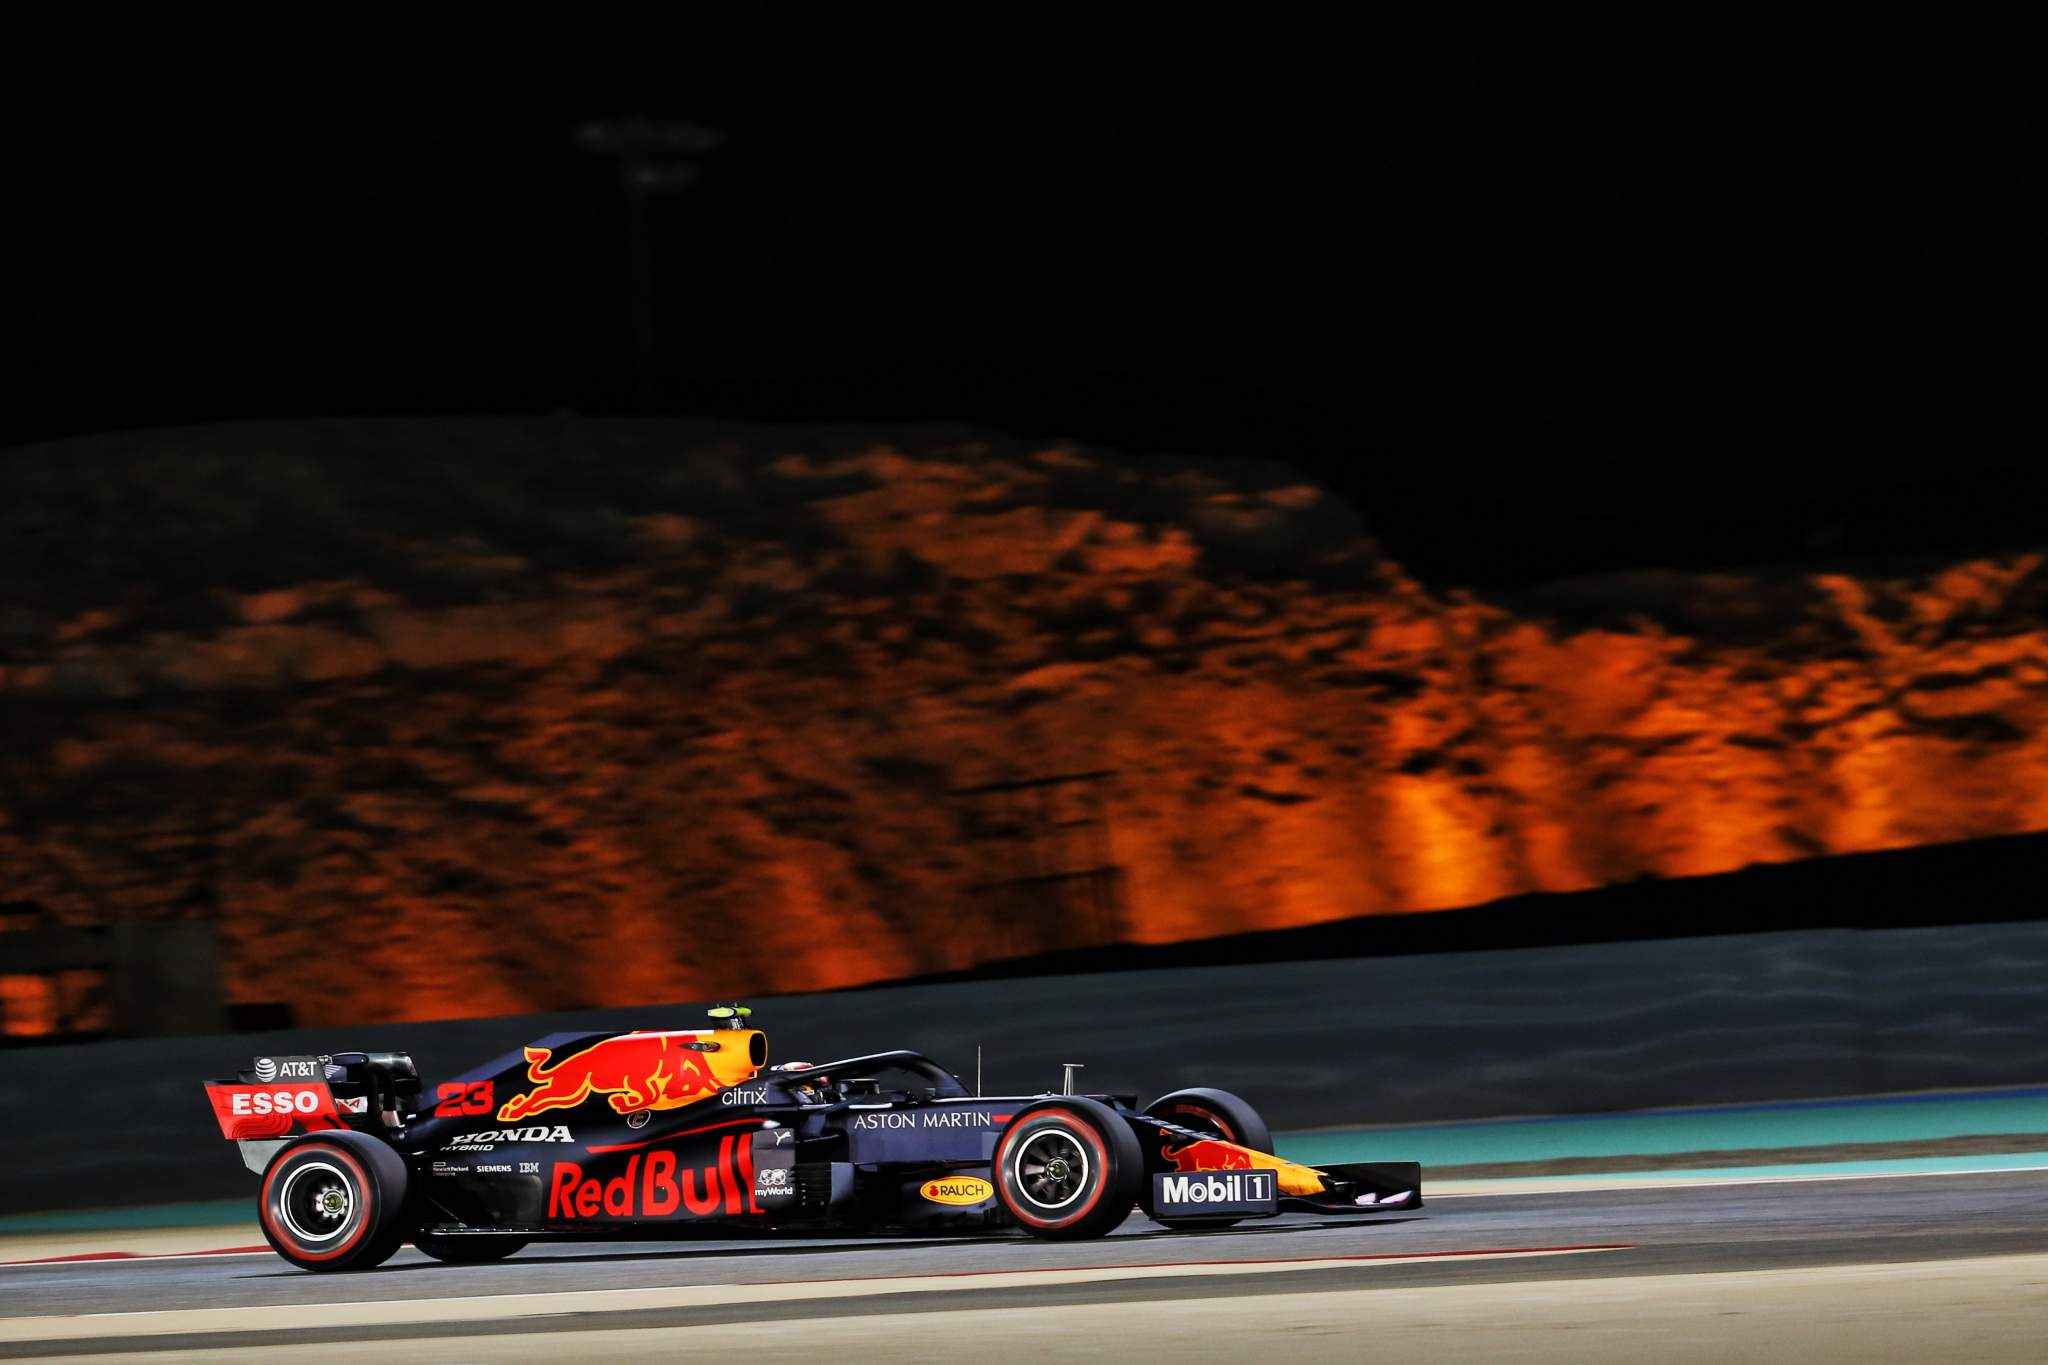 Motor Racing Formula One World Championship Bahrain Grand Prix Qualifying Day Sakhir, Bahrain